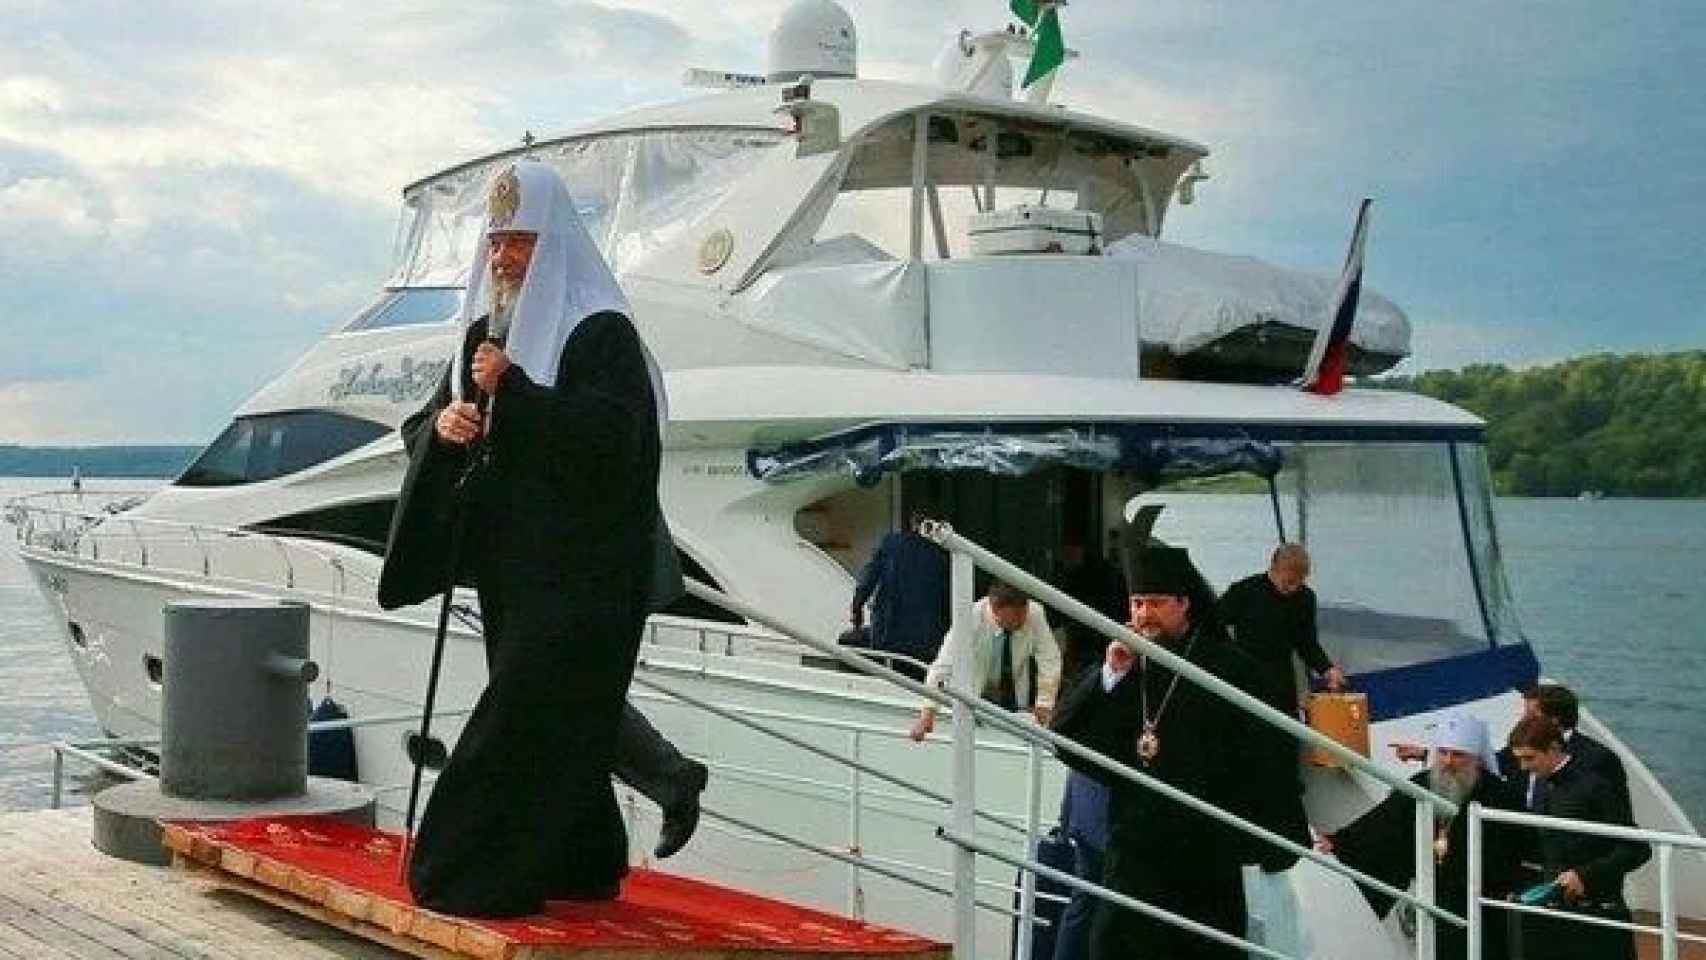 El patriarca abandona uno de los yates de su flotilla junto a miembros de la curia rusa ortodoxa